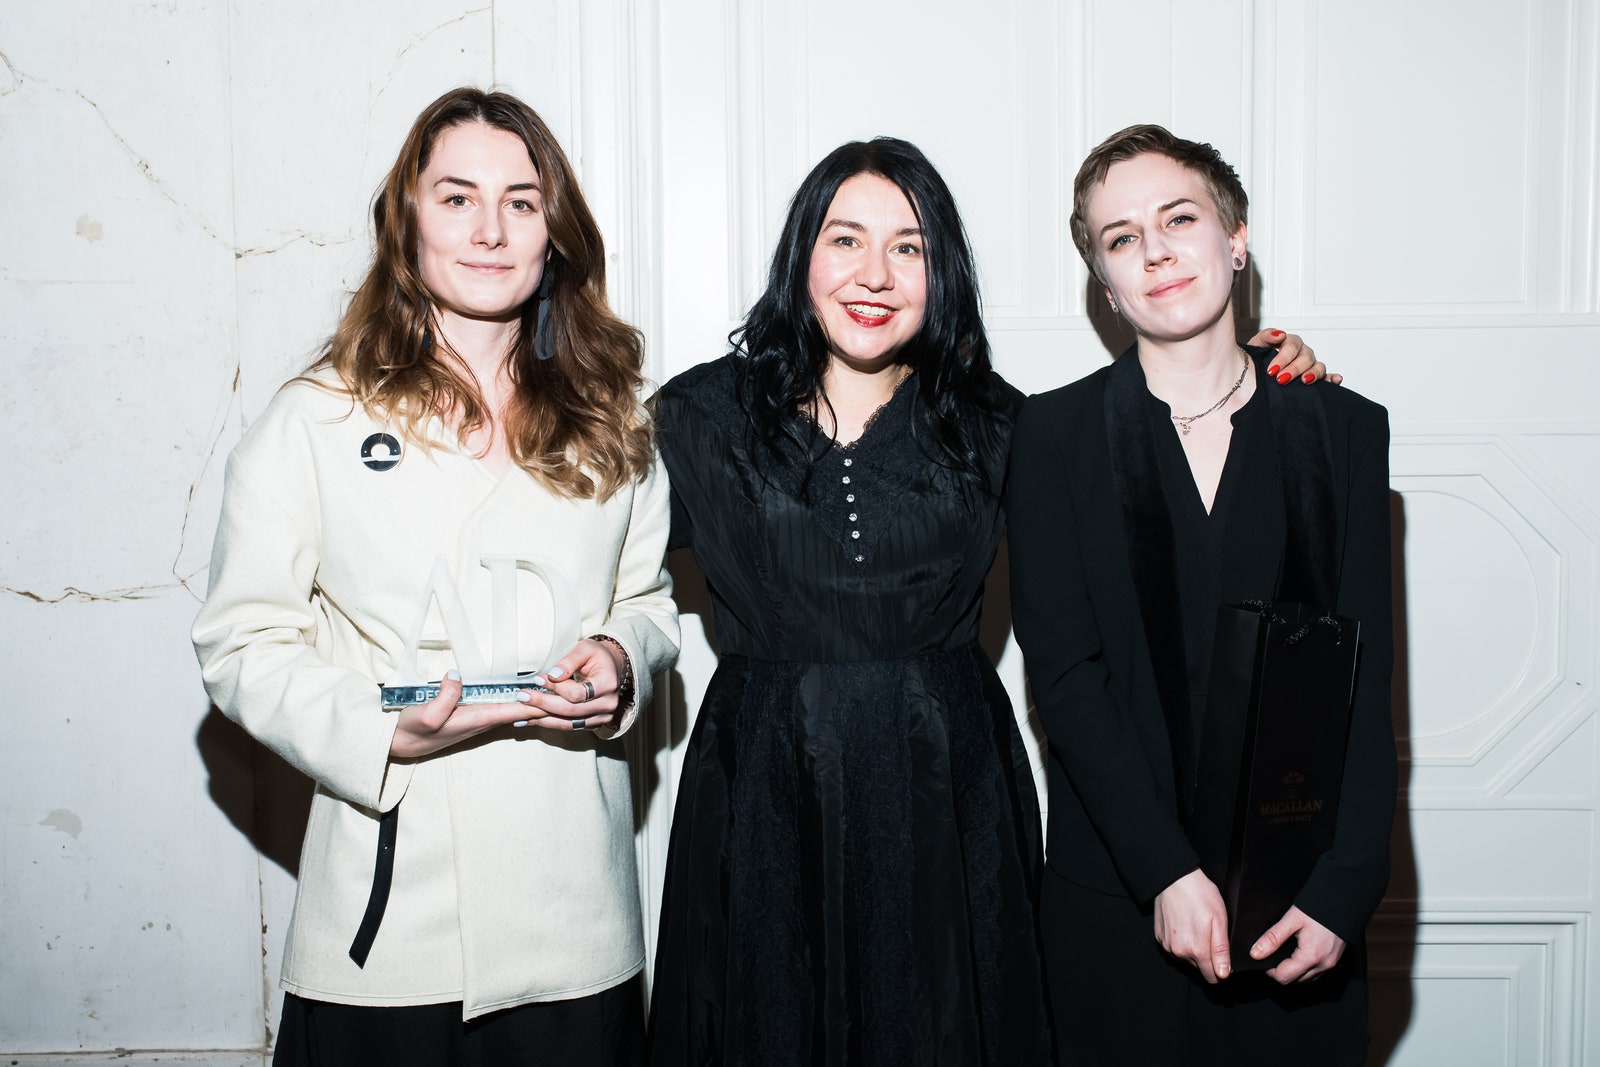 Победители в номинации “Рестораны” бюро DA Architects и Анастасия Ромашкевич.